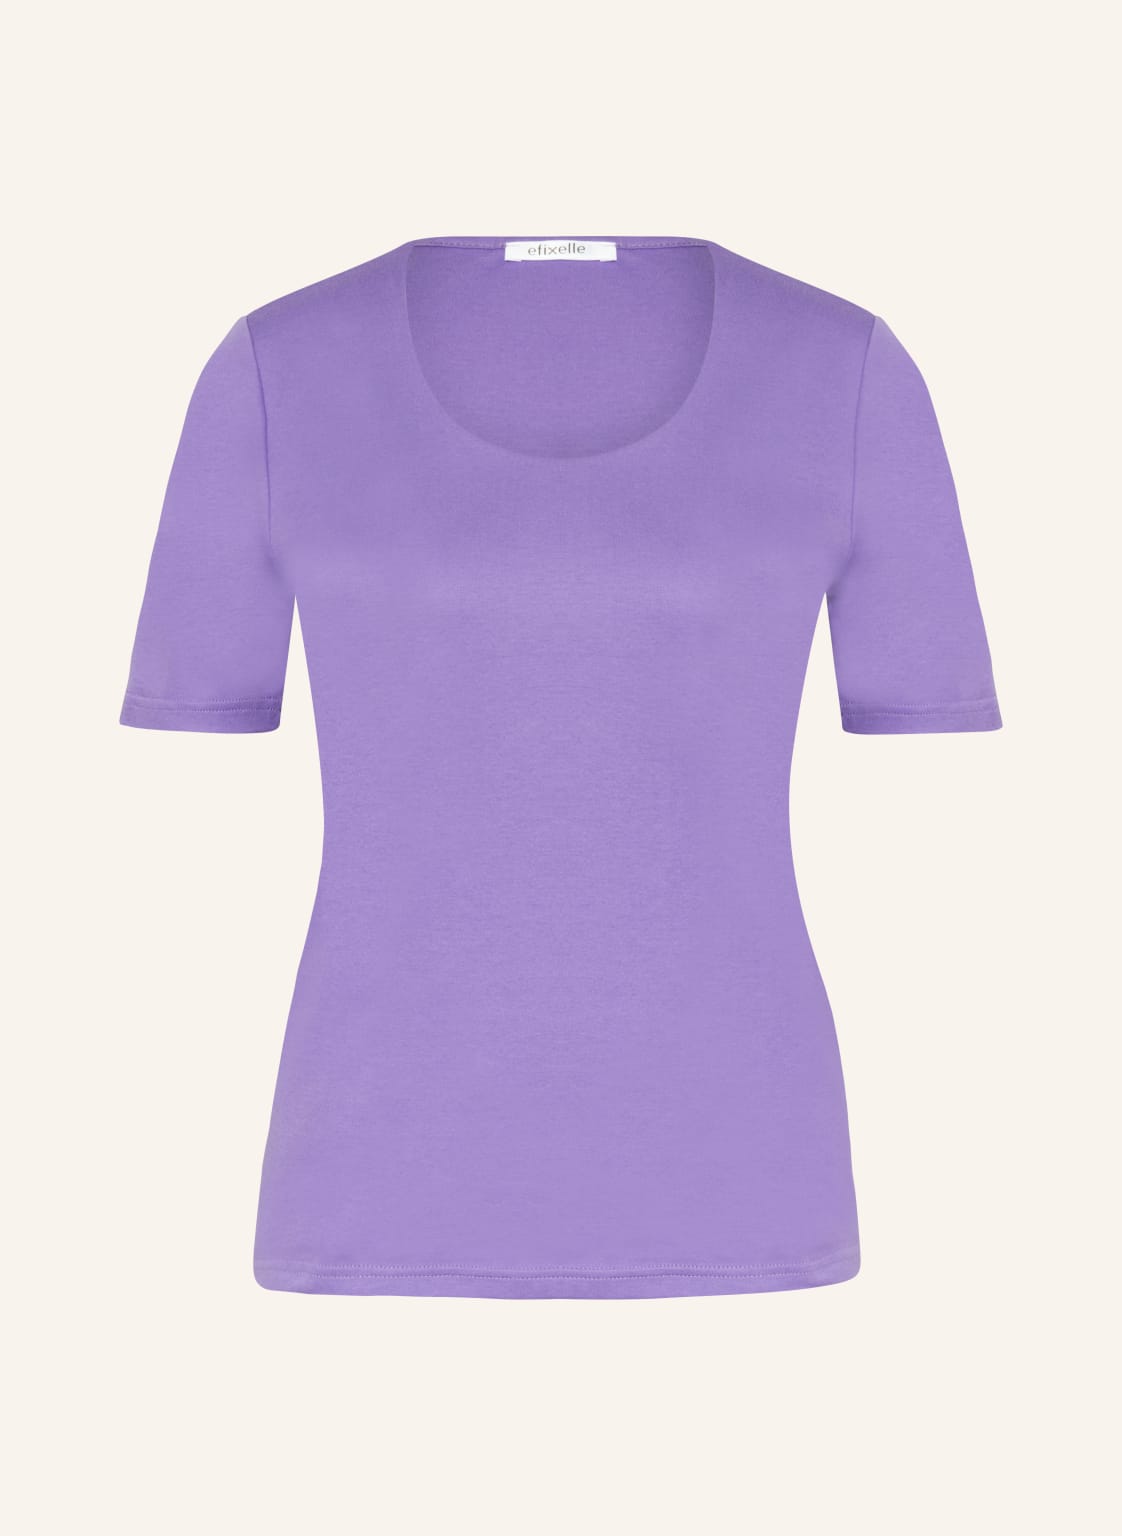 Efixelle T-Shirt lila von efixelle